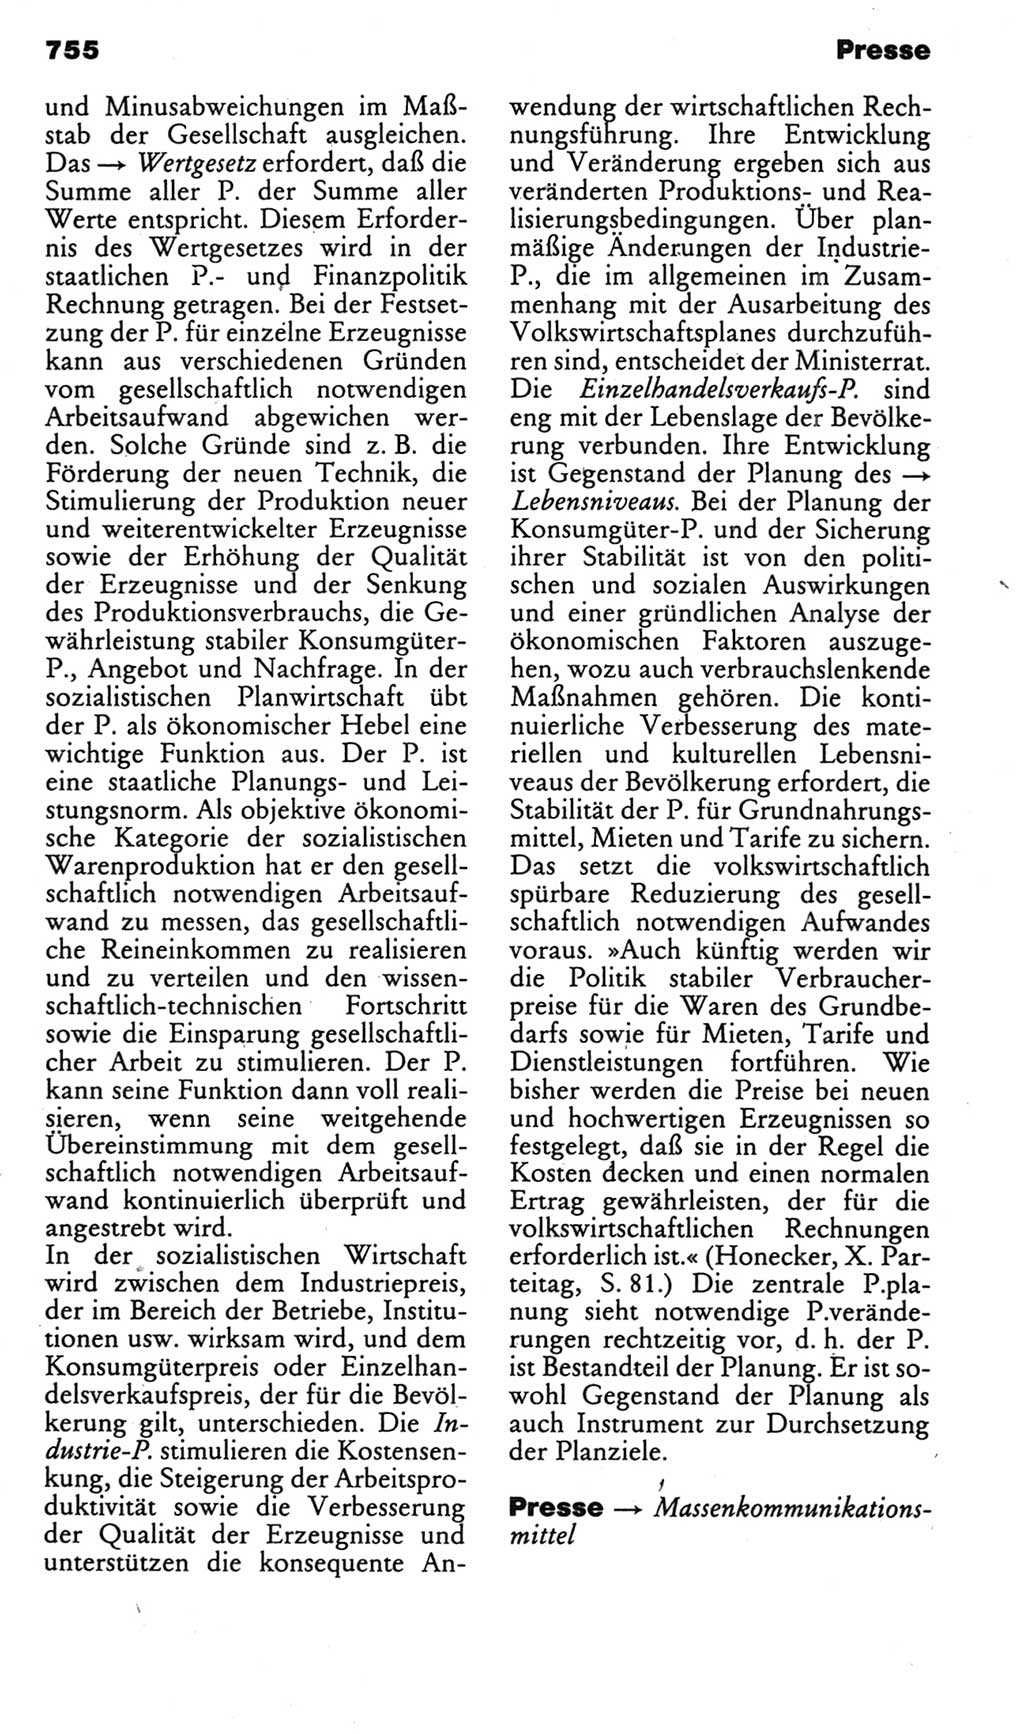 Kleines politisches Wörterbuch [Deutsche Demokratische Republik (DDR)] 1985, Seite 755 (Kl. pol. Wb. DDR 1985, S. 755)